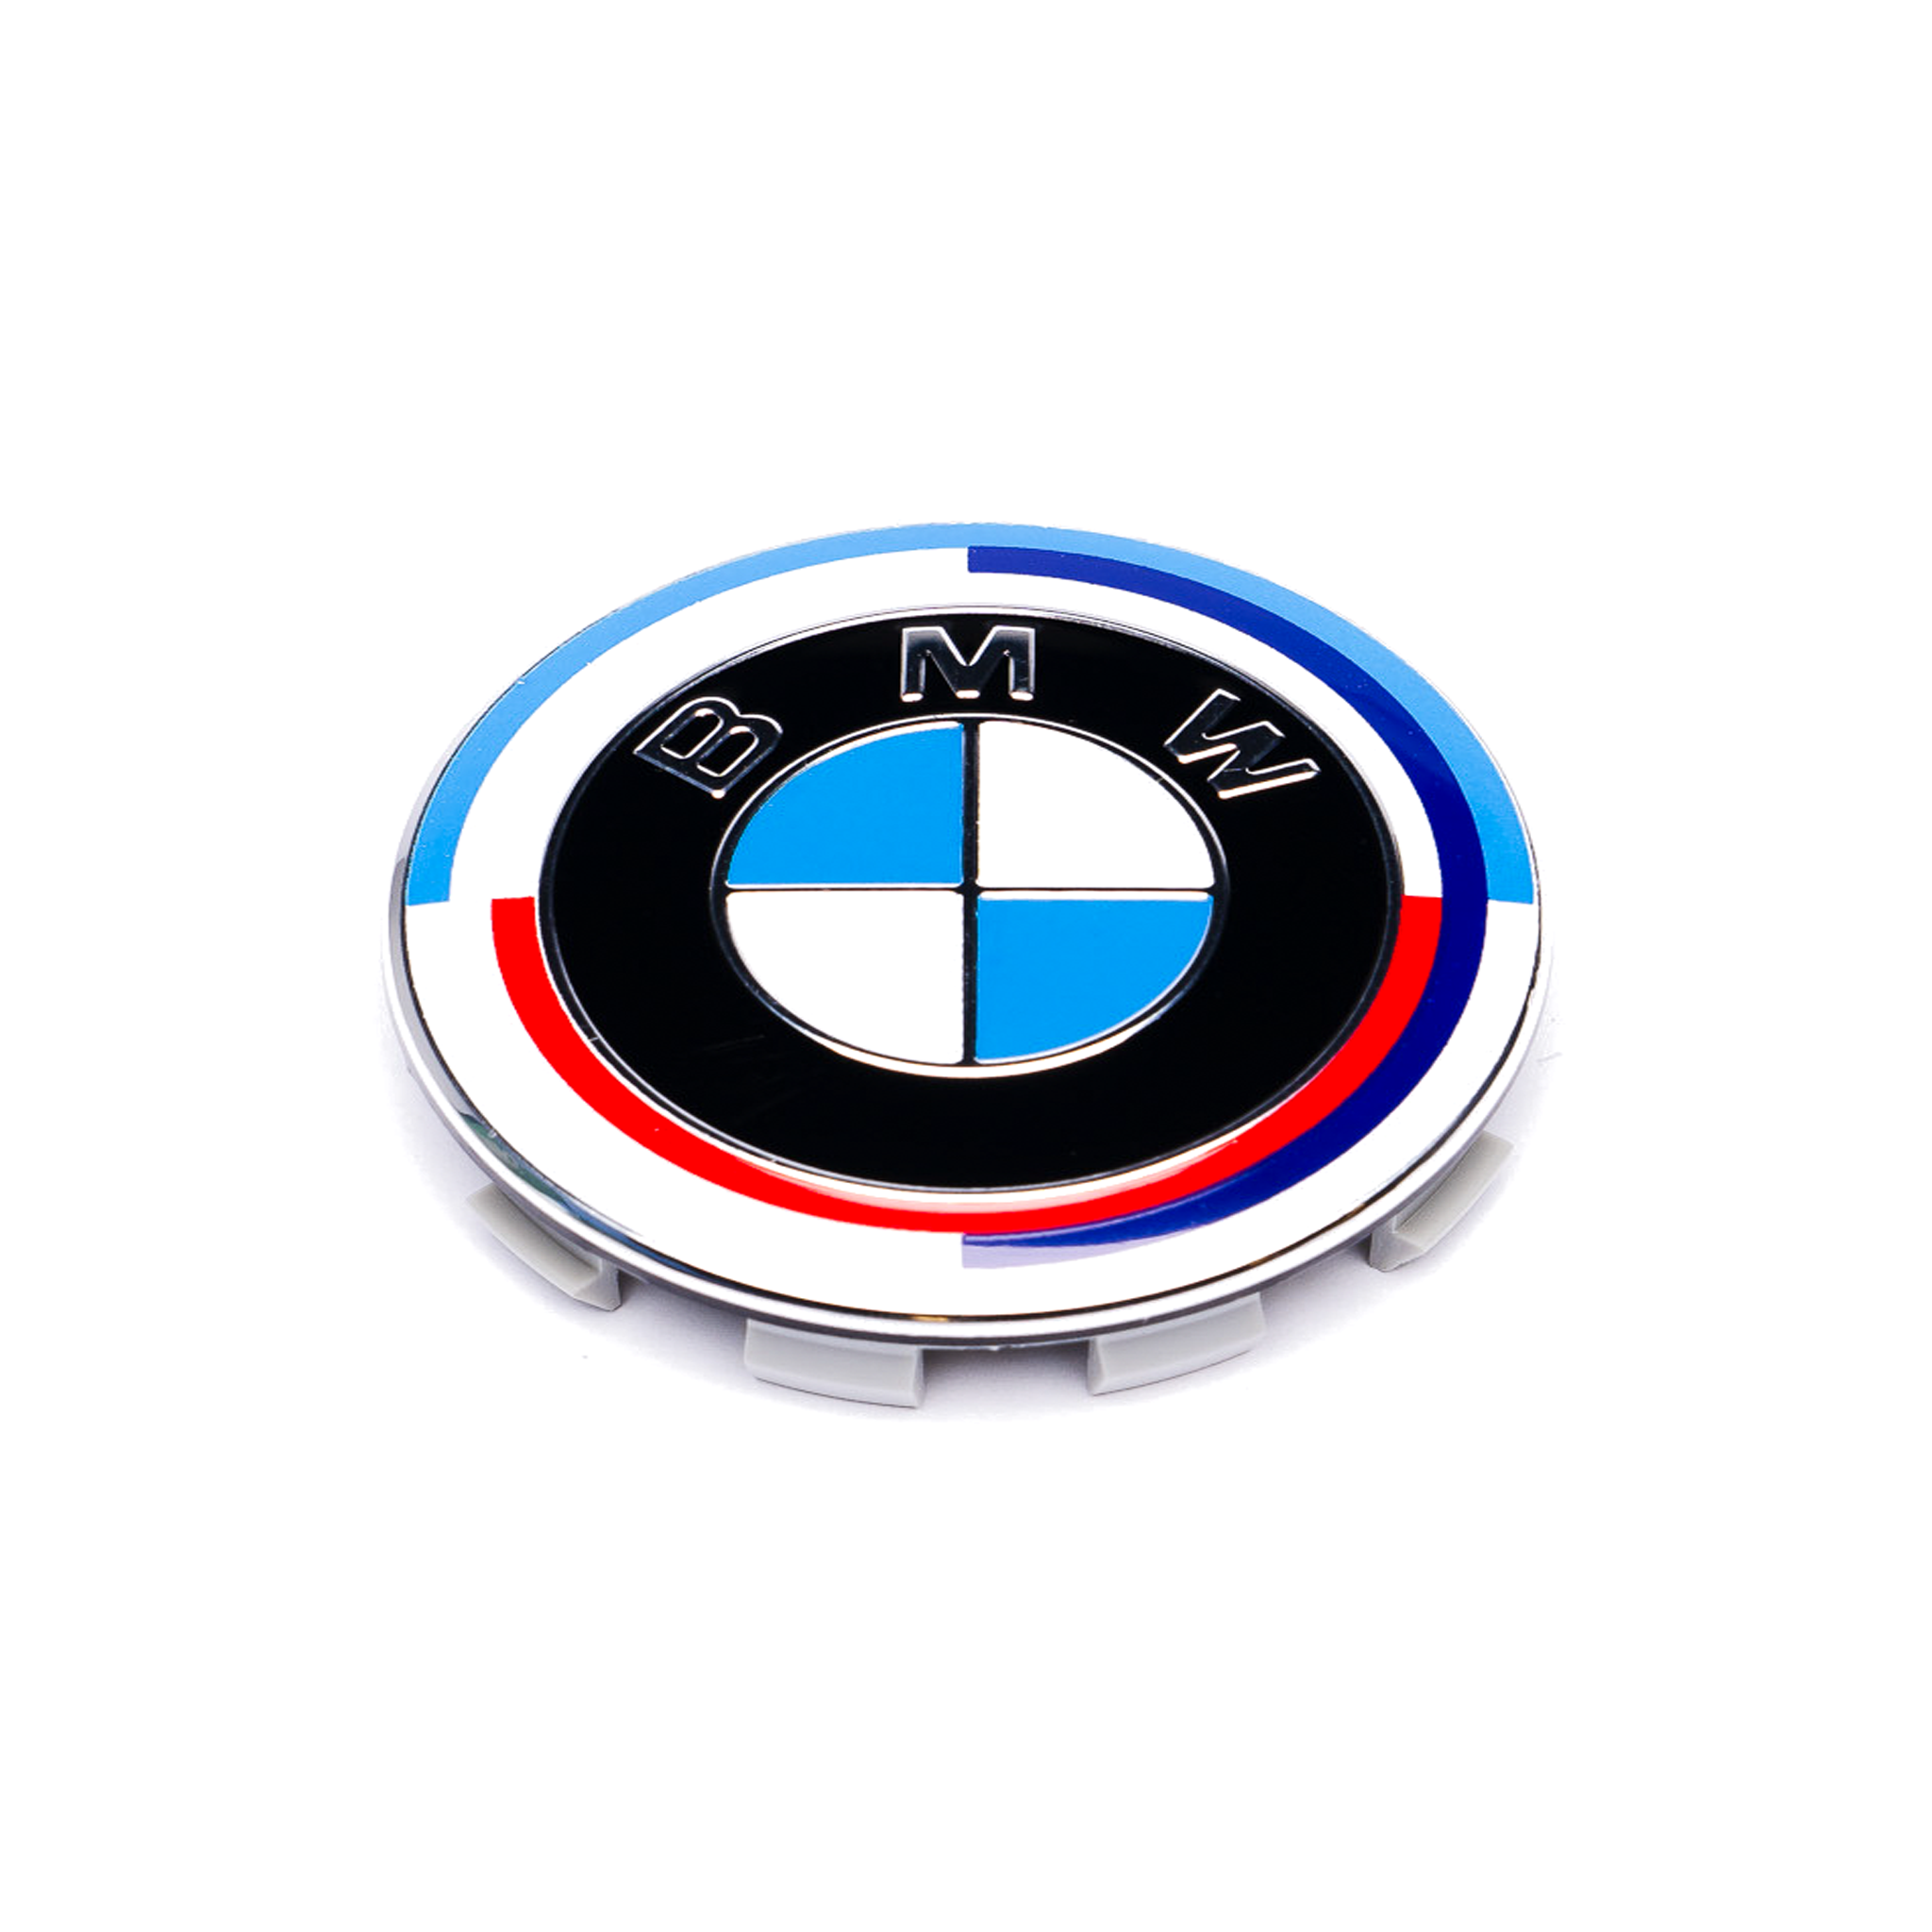 Tapa central de rueda Exon BMW Style Stealth negra/blanca para BMW 1 2 3 5 7 8 X1 X2 X3 X4 X5 X6 X7